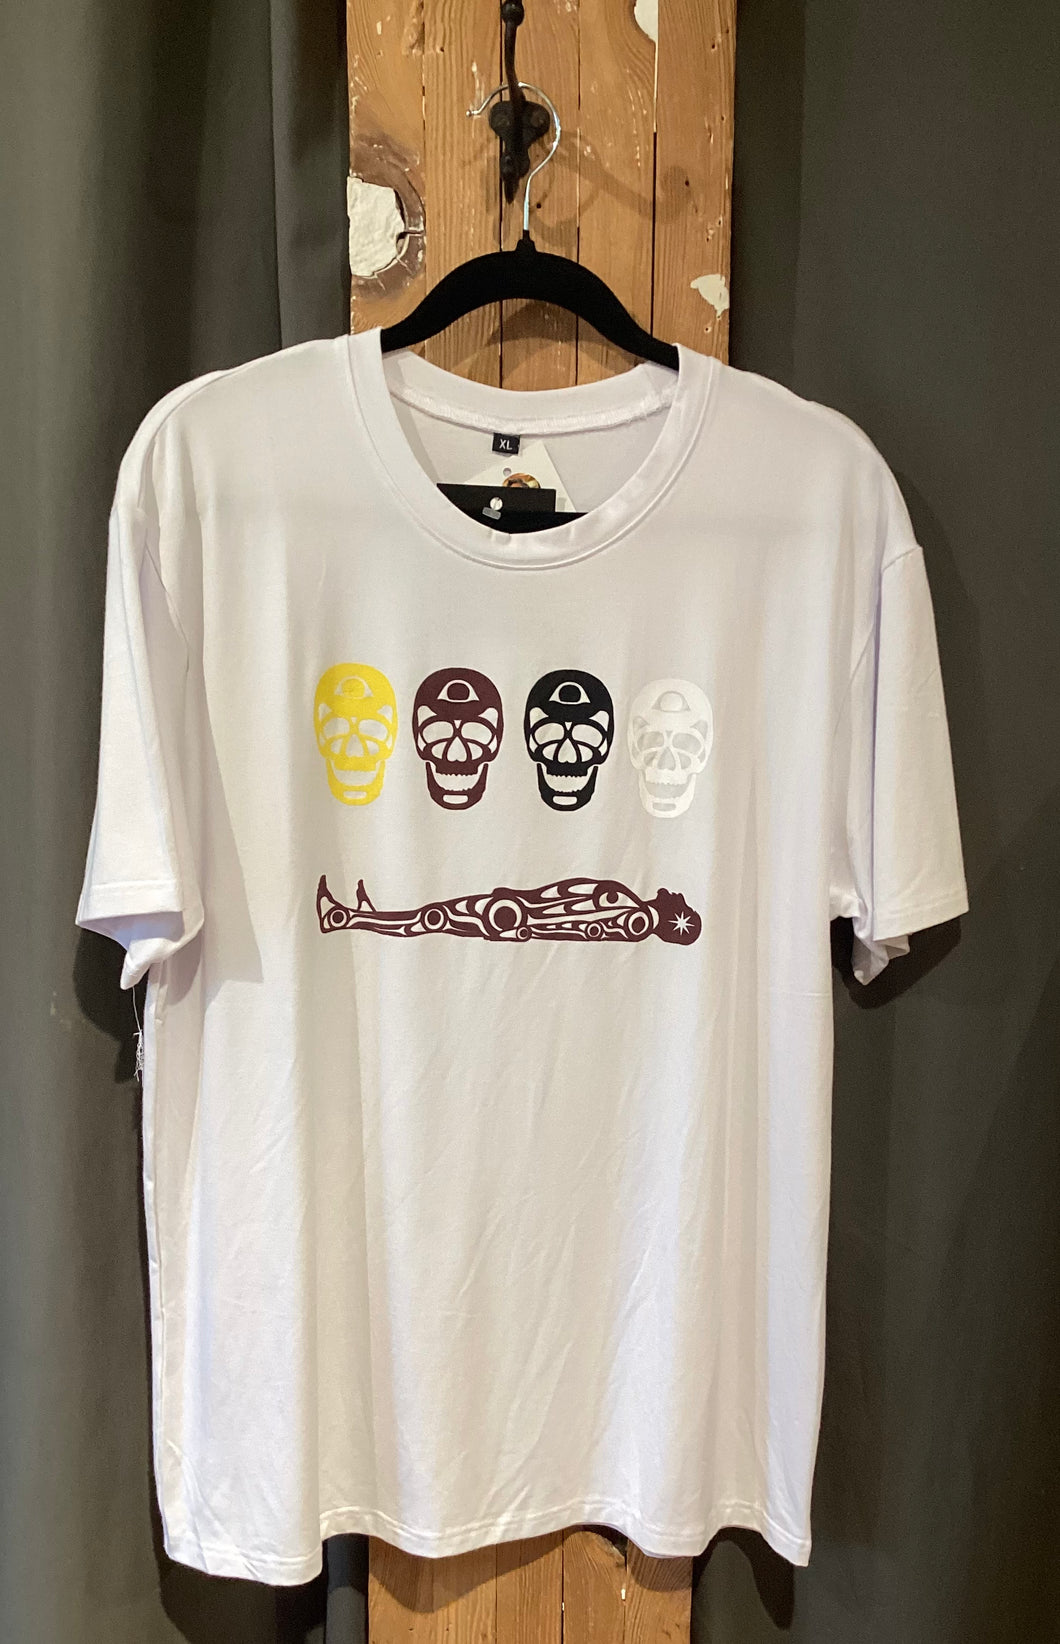 NM1-045 Men's T-Shirt